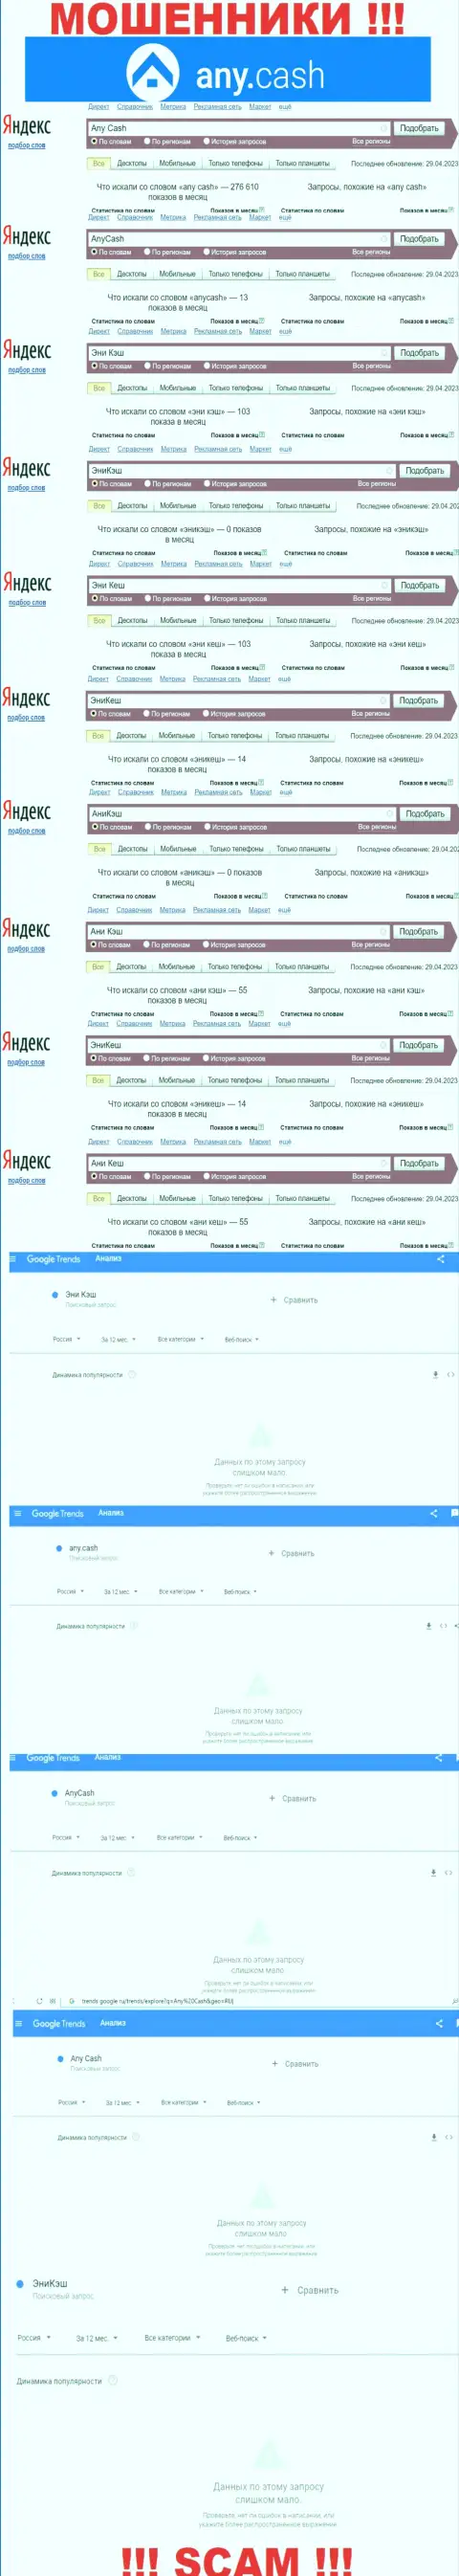 Скрин результатов online запросов по противоправно действующей компании АниКеш